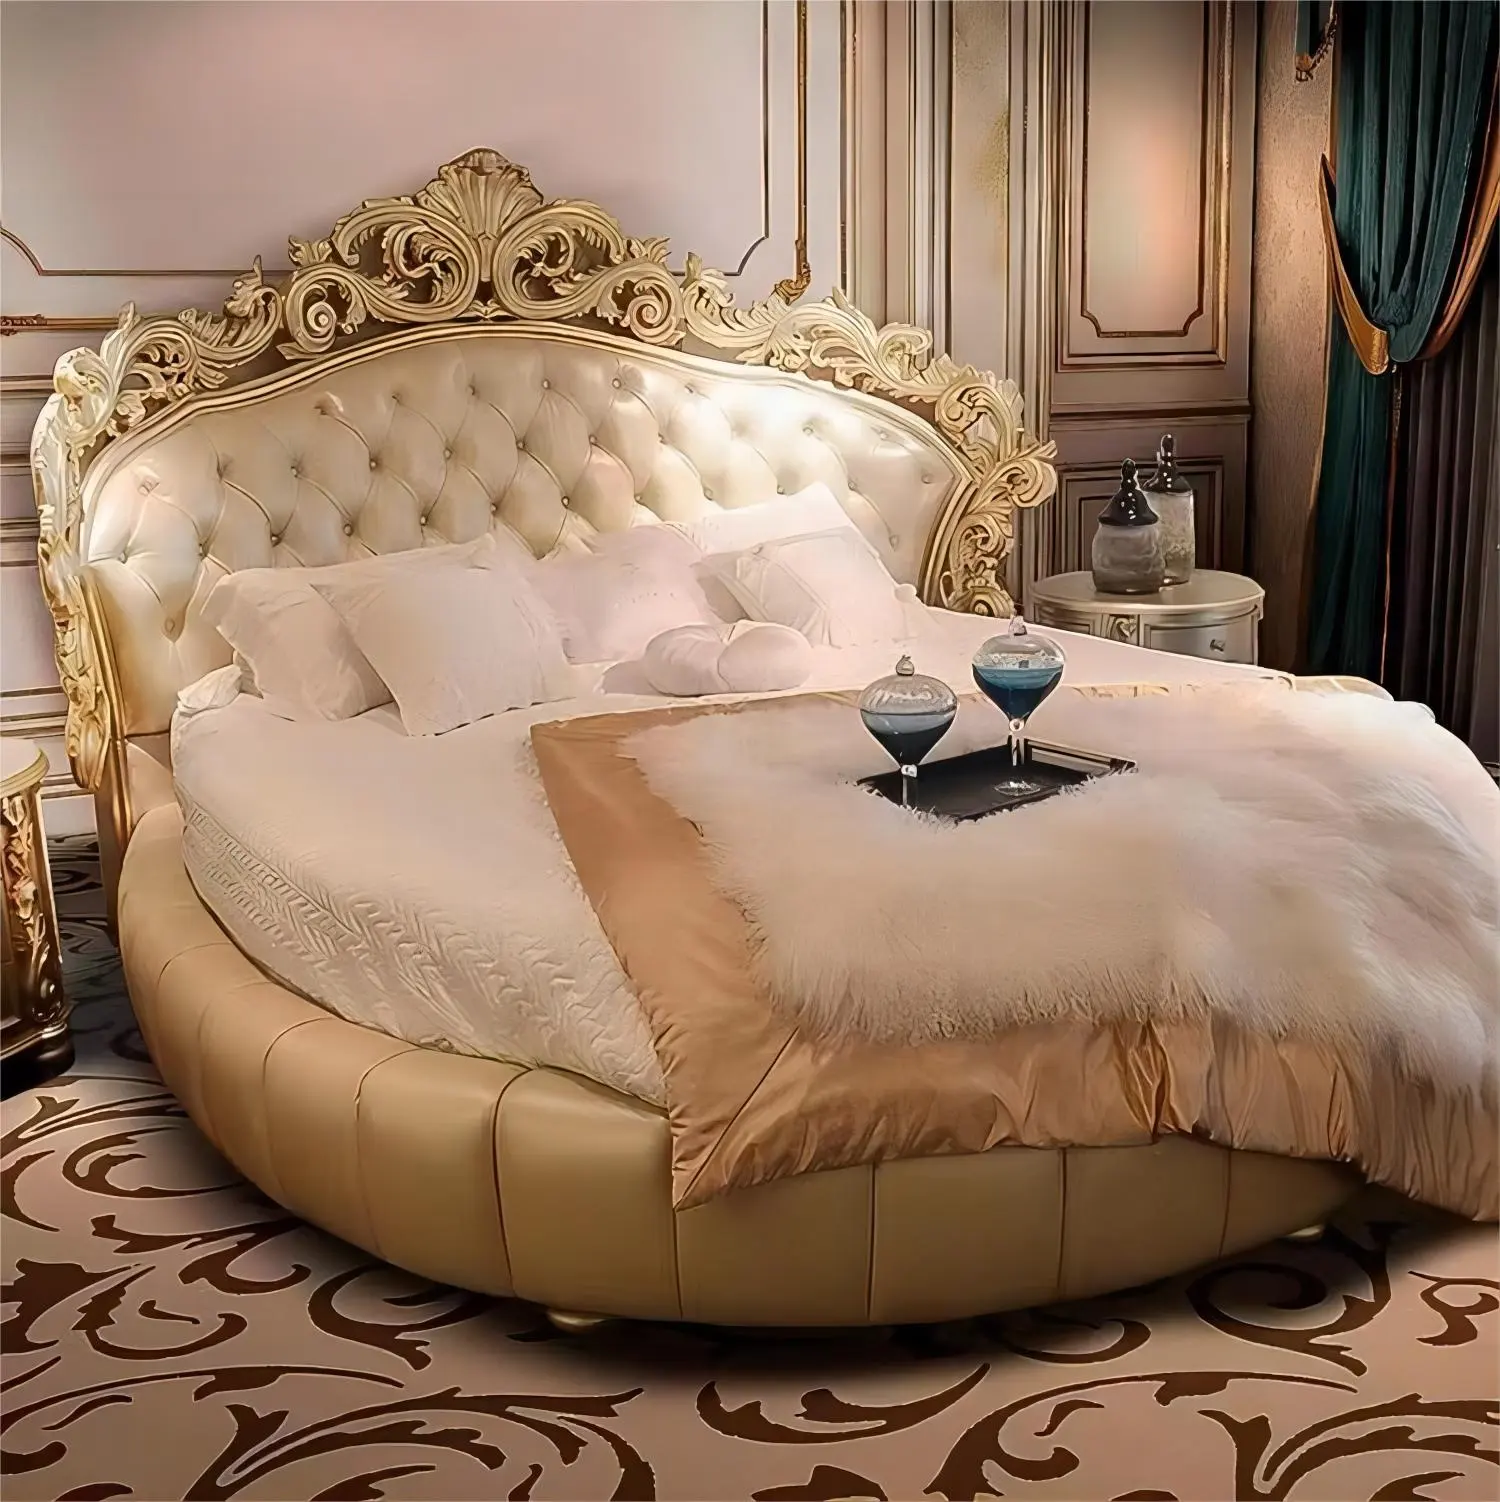 ヨーロッパのヴィンテージスタイルのヴィラの寝室無垢材の手彫りの生地の丸いベッド